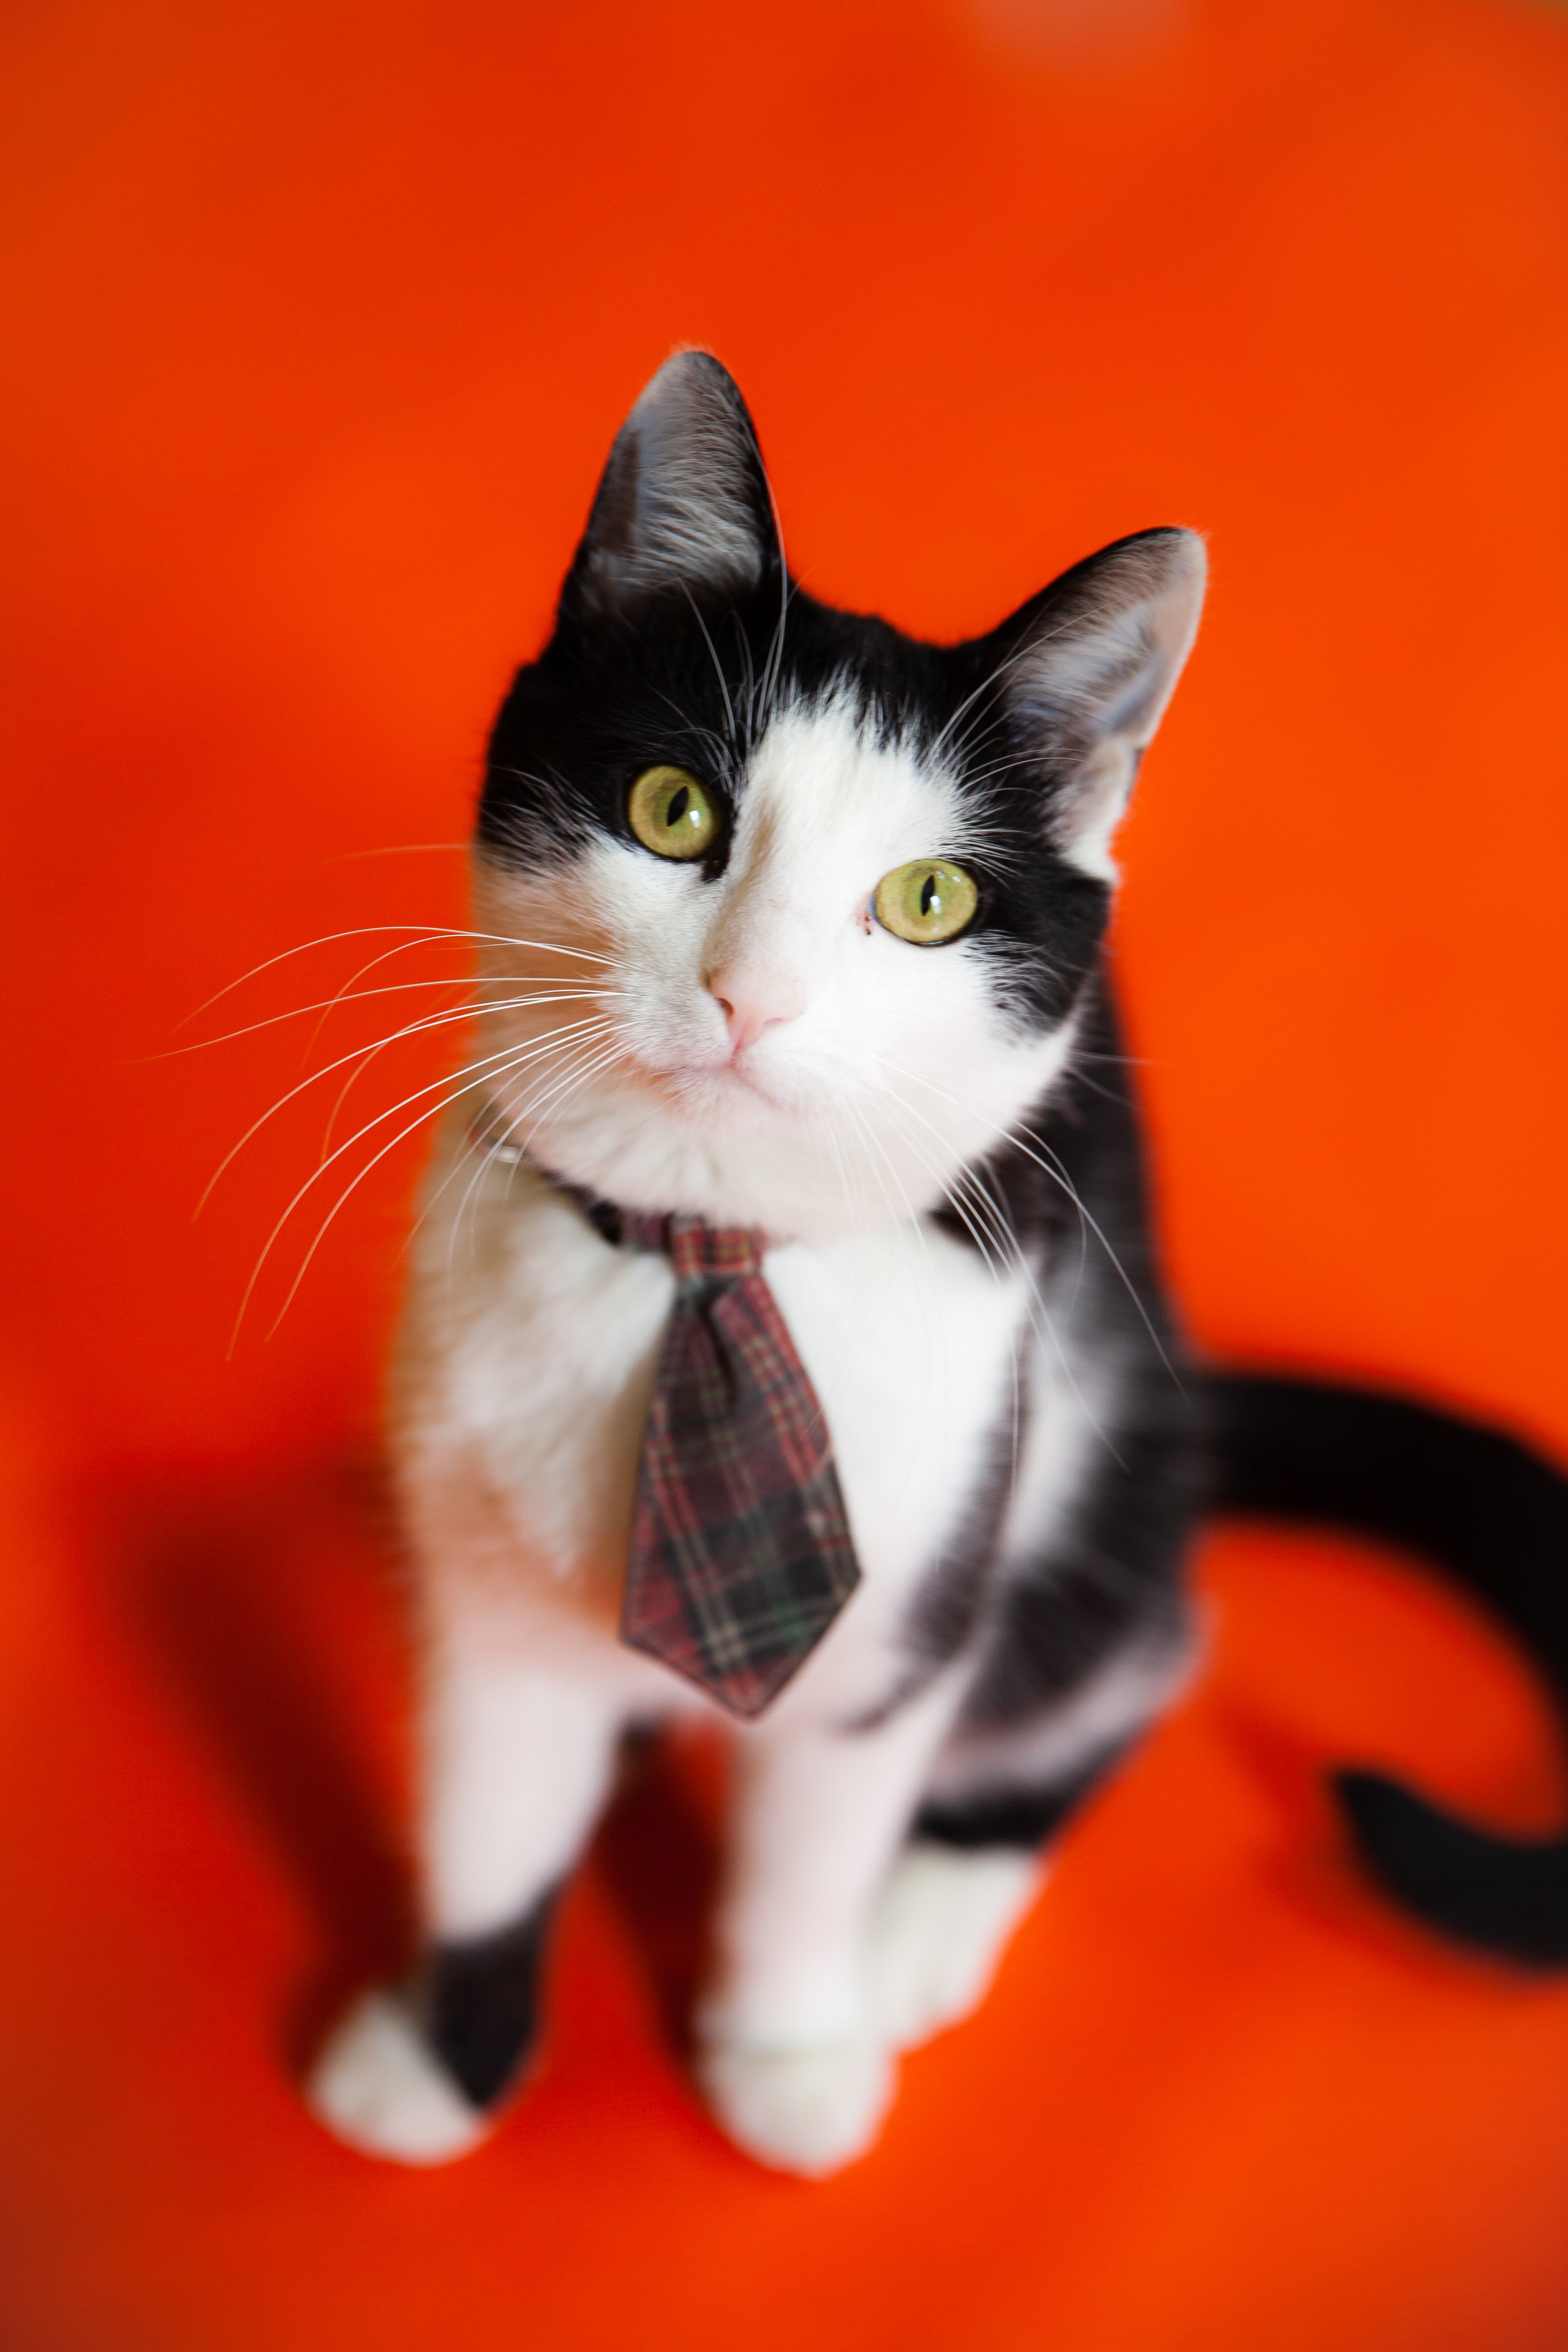 A cat wearing a tie